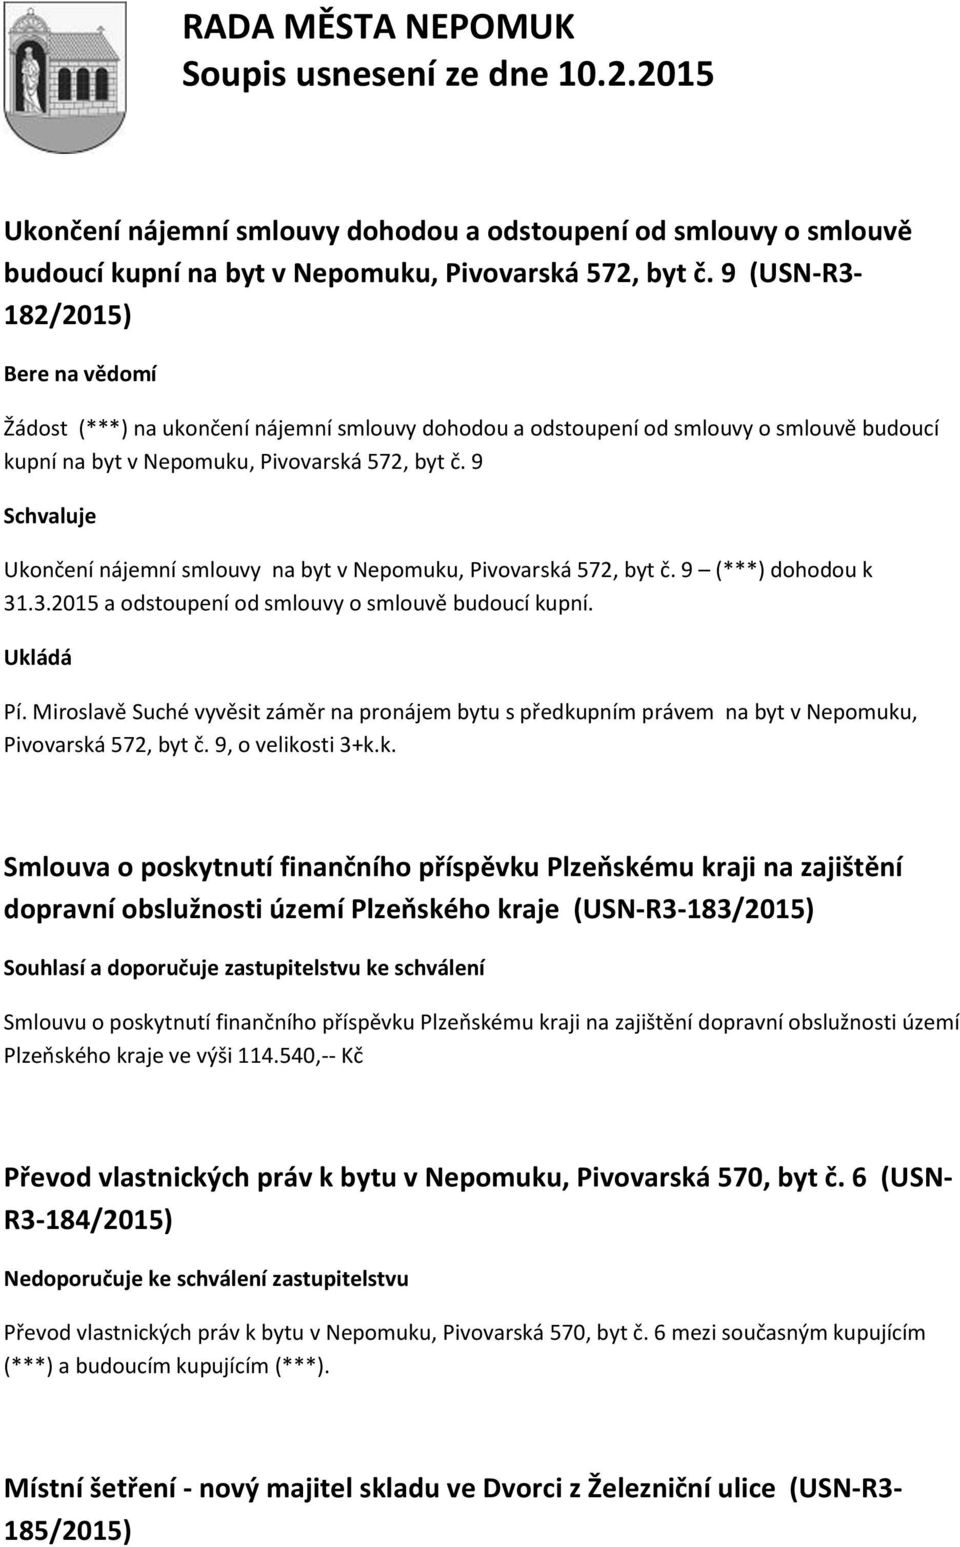 9 Ukončení nájemní smlouvy na byt v Nepomuku, Pivovarská 572, byt č. 9 (***) dohodou k 31.3.2015 a odstoupení od smlouvy o smlouvě budoucí kupní. Ukládá Pí.